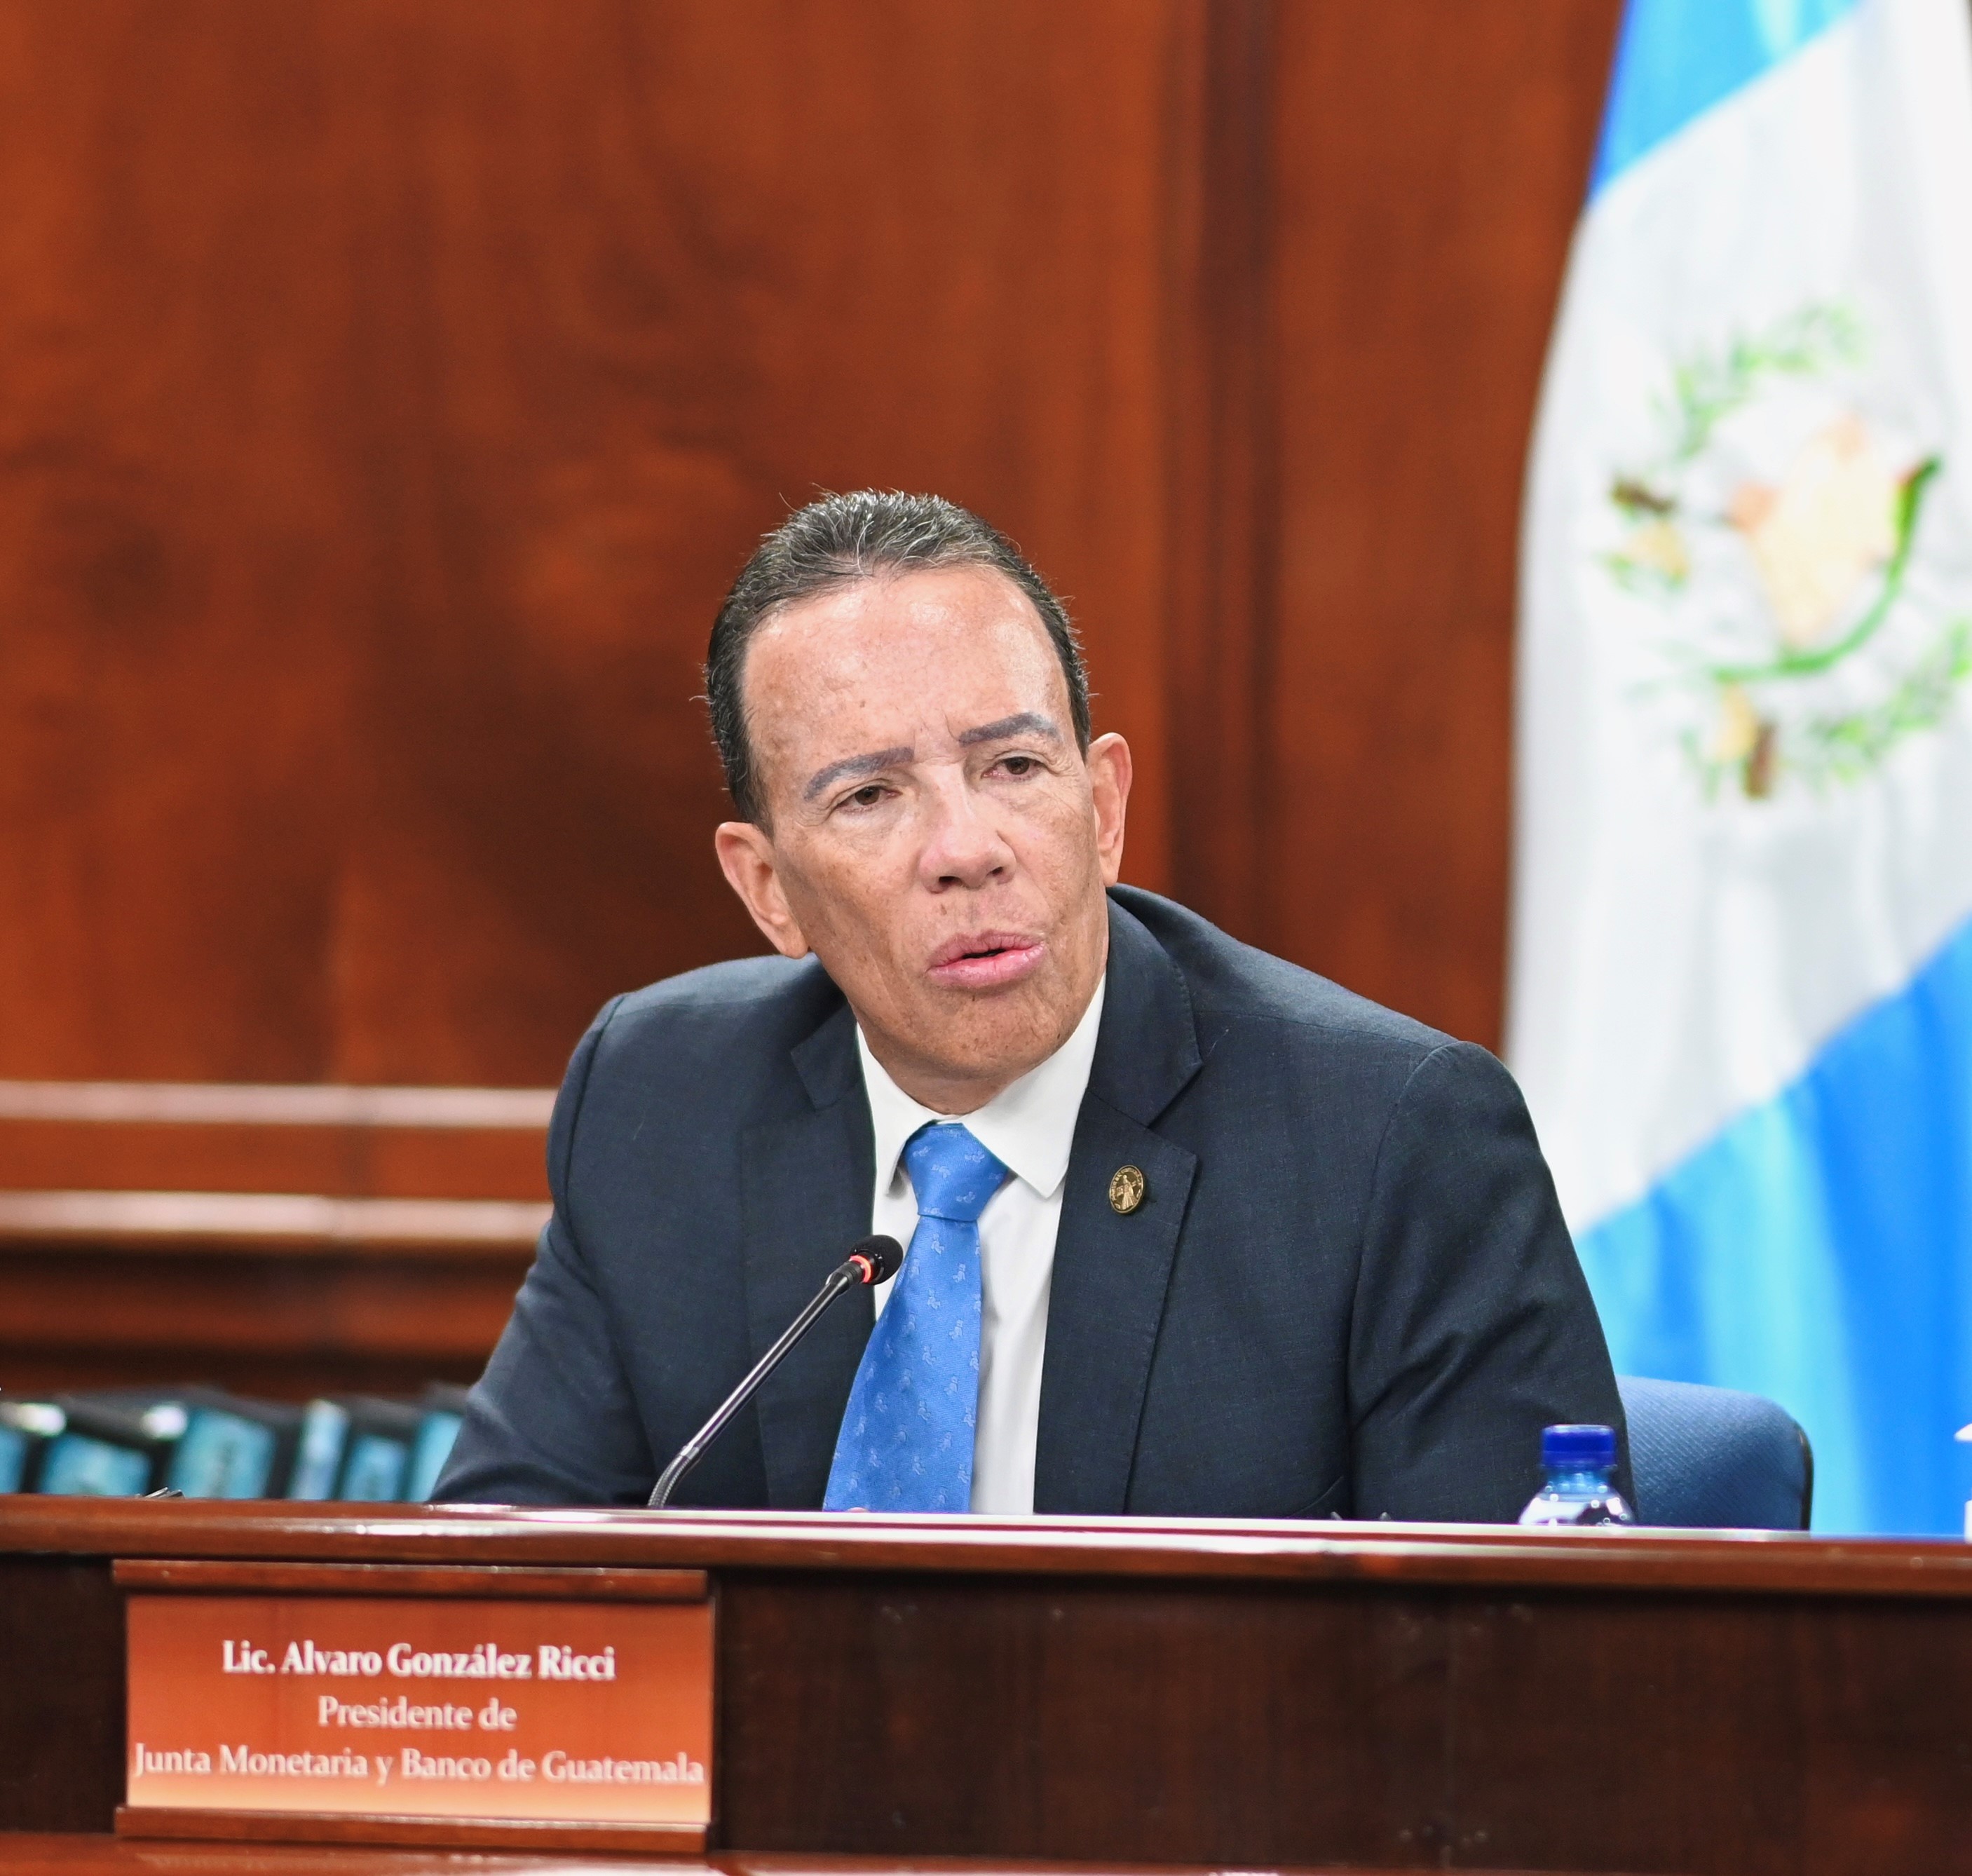 Álvaro González Ricci, presidente del Banco de Guatemala y Junta Monetaria.